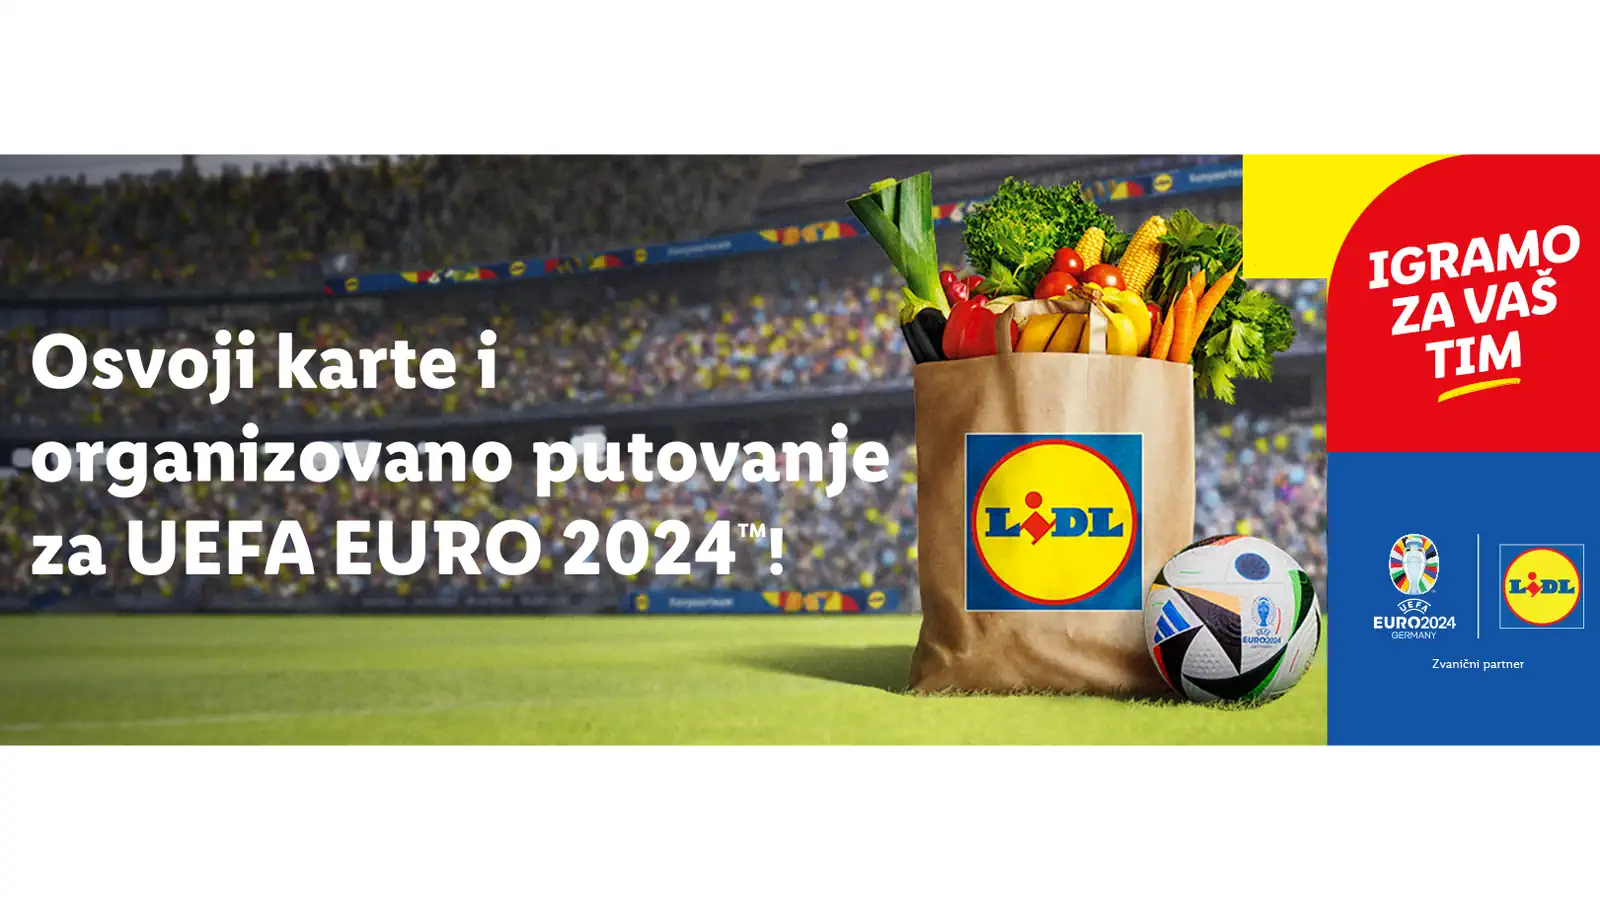 USKORO ZAVRŠAVA! Lidl nagradna igra za putovanja na Evropsko prvenstvo u fudbalu EURO 2024